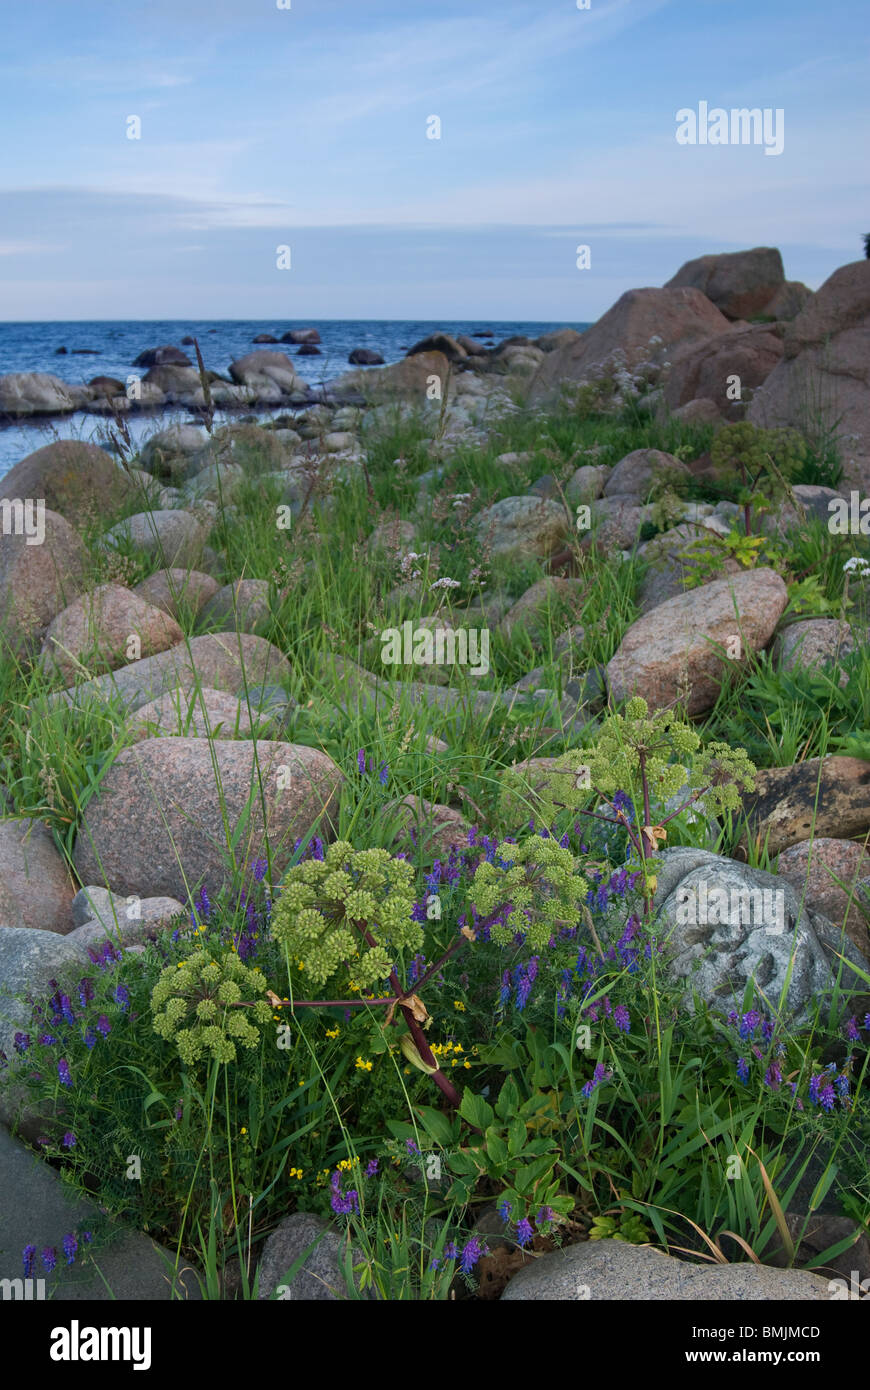 La Scandinavia, Svezia, Smaland, vista di angelica con il mare in background Foto Stock